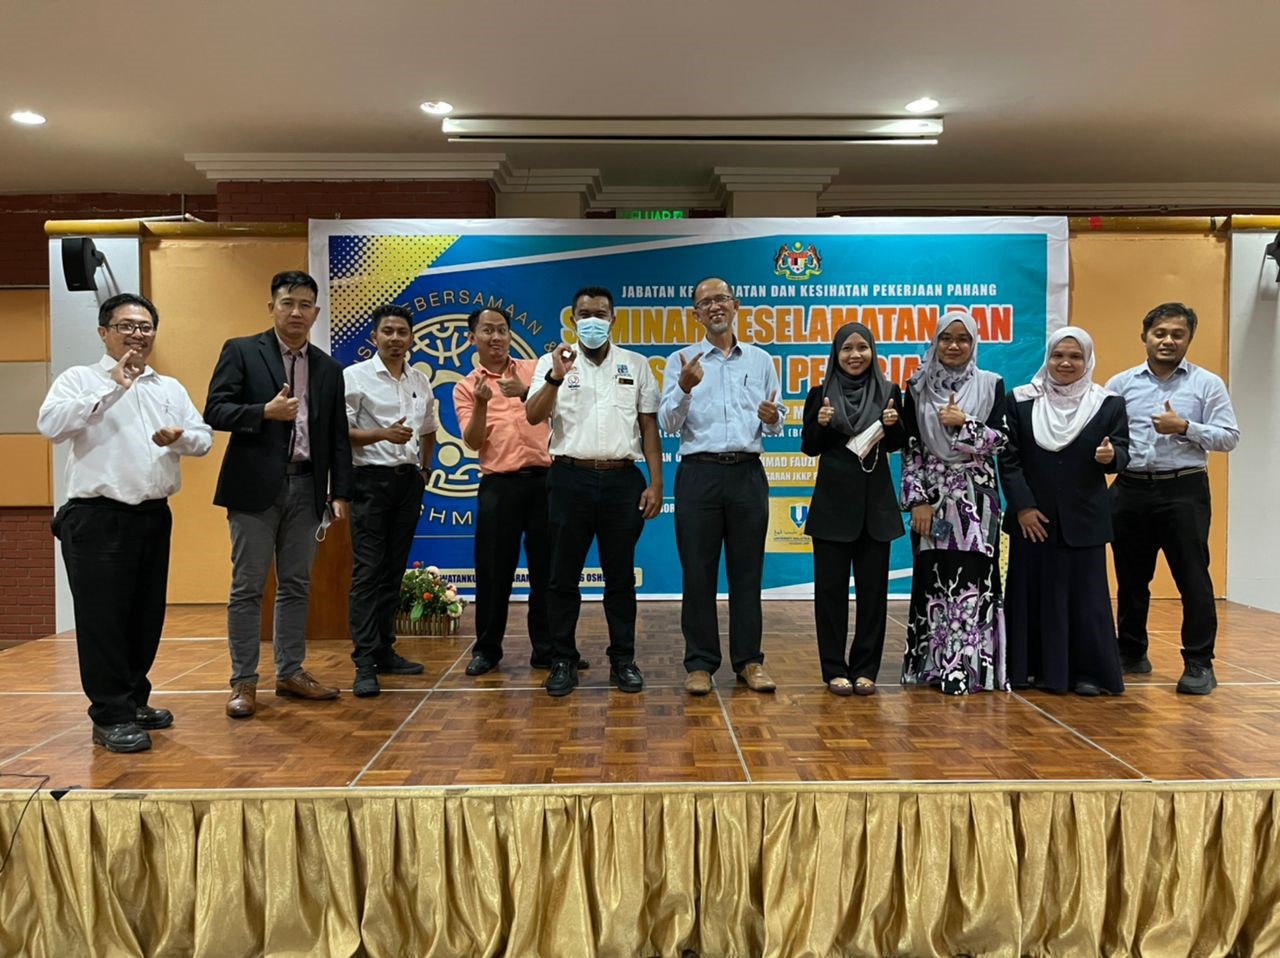 Seminar Keselamatan dan Kesihatan Pekerjaan Tahun 2022 anjuran Jabatan Keselamatan dan Kesihatan Pekerjaan (JKKP) Pahang